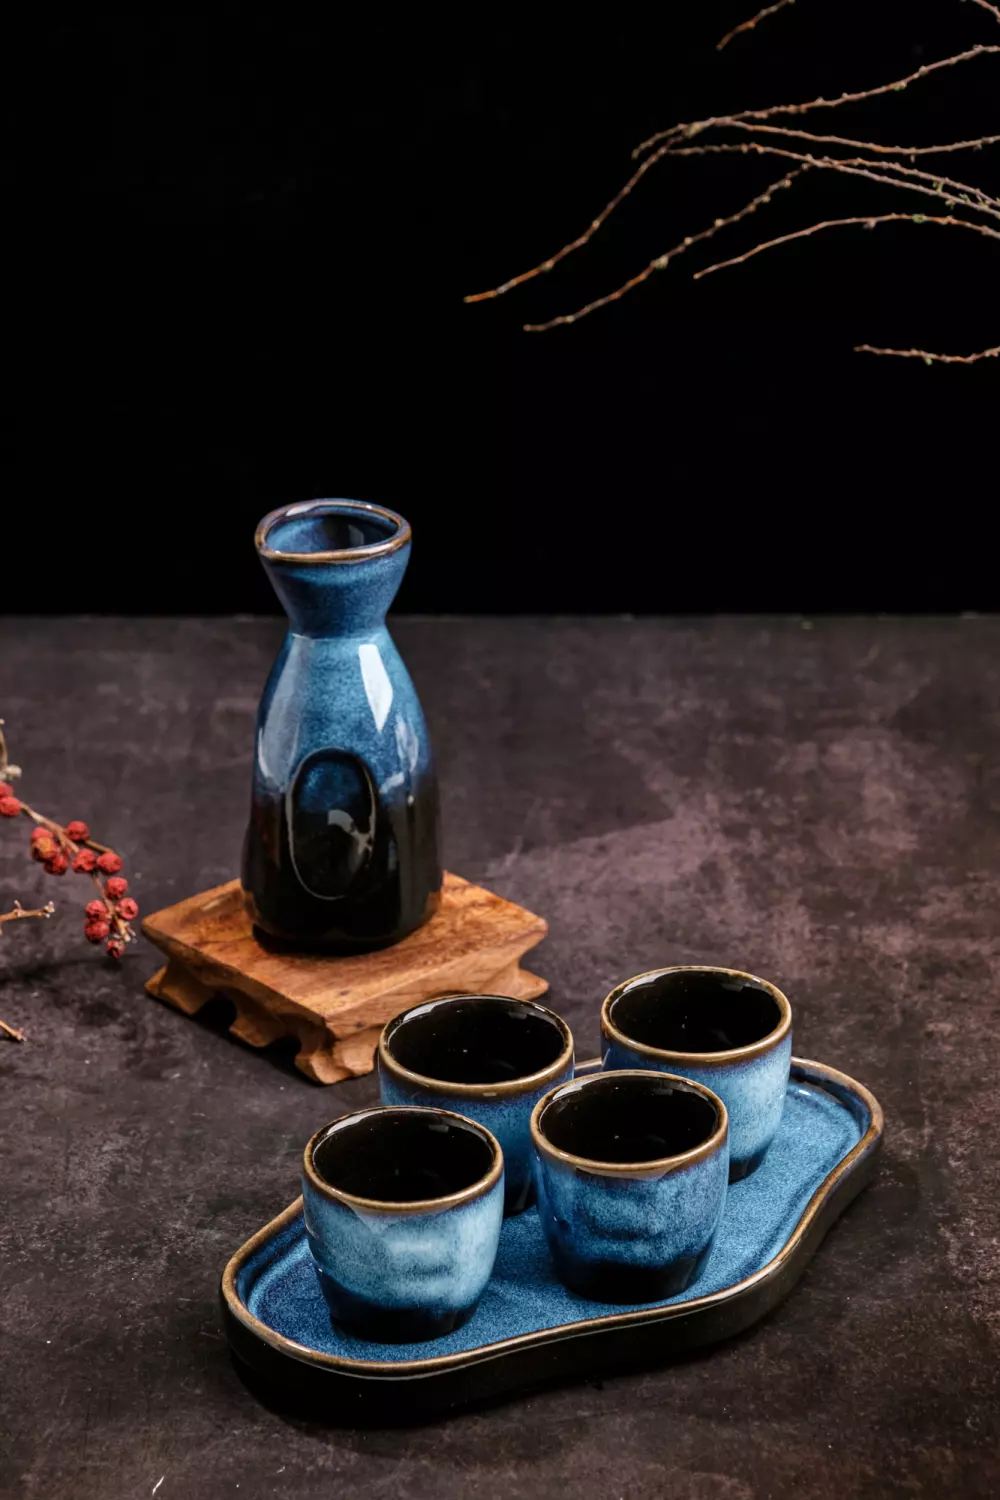 Sake Serving Set  Japanese Ceramic Sake Set, 1 Bottle And 4 Cups With  Ceramic Tray - TrueKatana